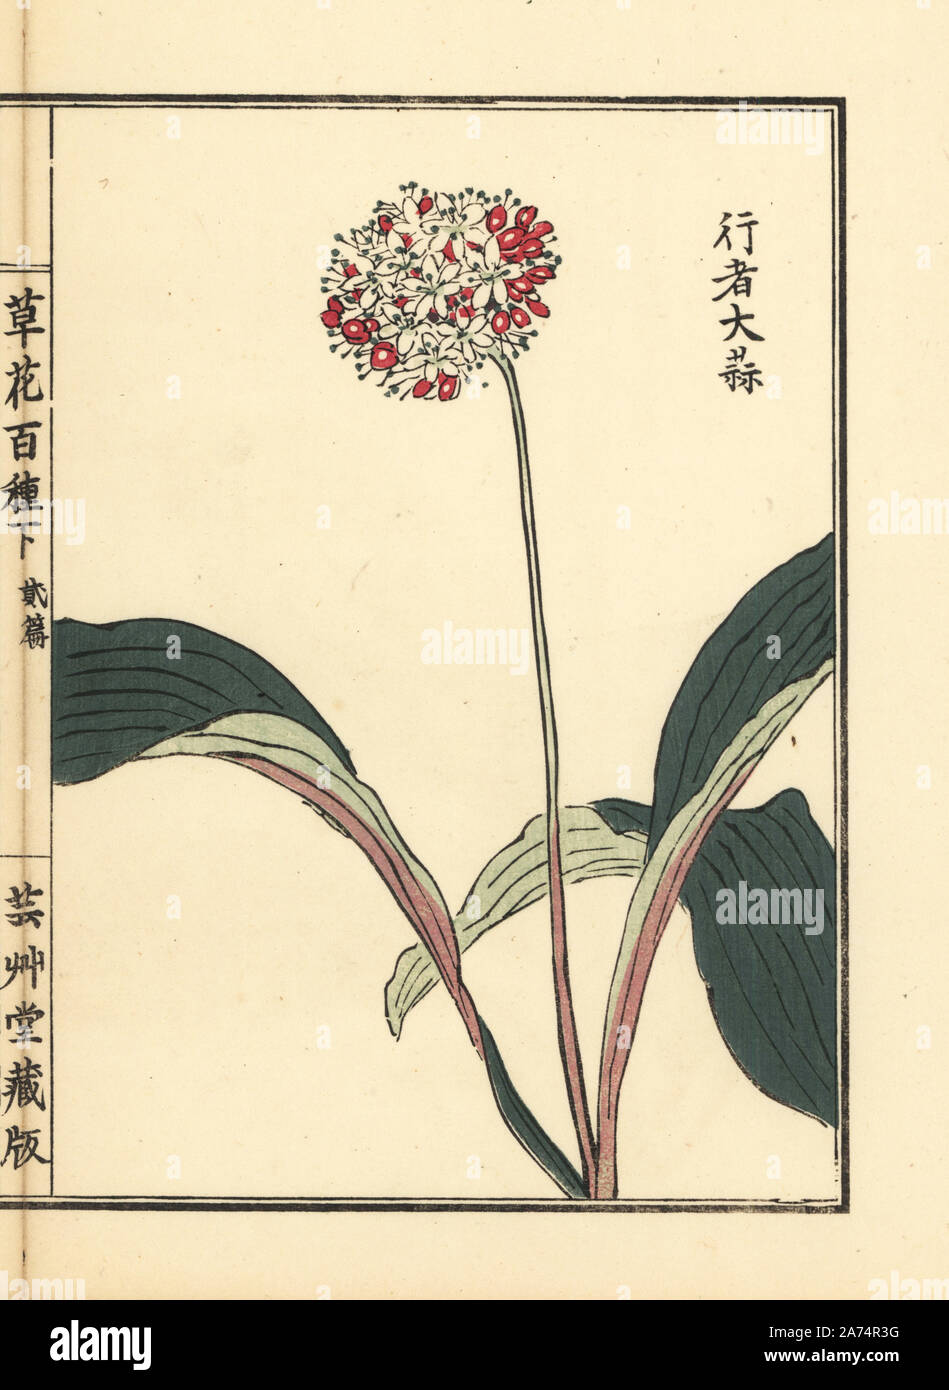 Gyoja ninniku or victory onion, Allium victorialis. Handcoloured woodblock print by Kono Bairei from Kusa Bana Hyakushu (One Hundred Varieties of Flowers), Tokyo, Yamada, 1901. Stock Photo